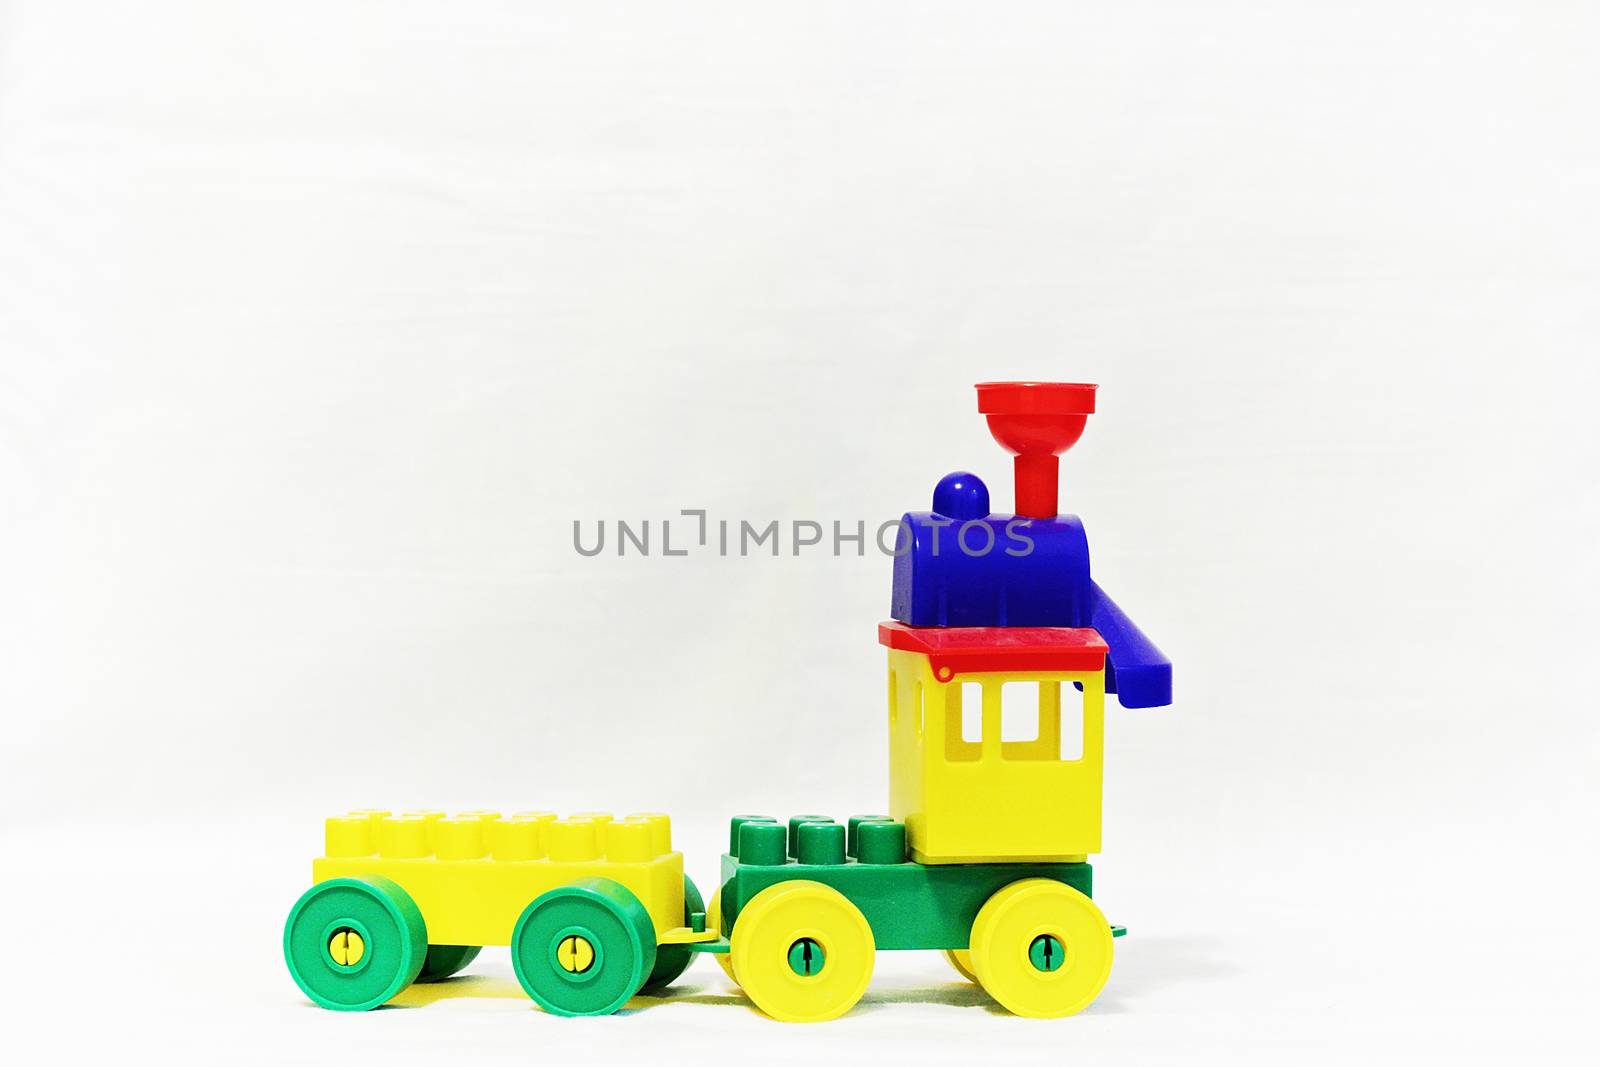 Children's toy designer train. by andsst